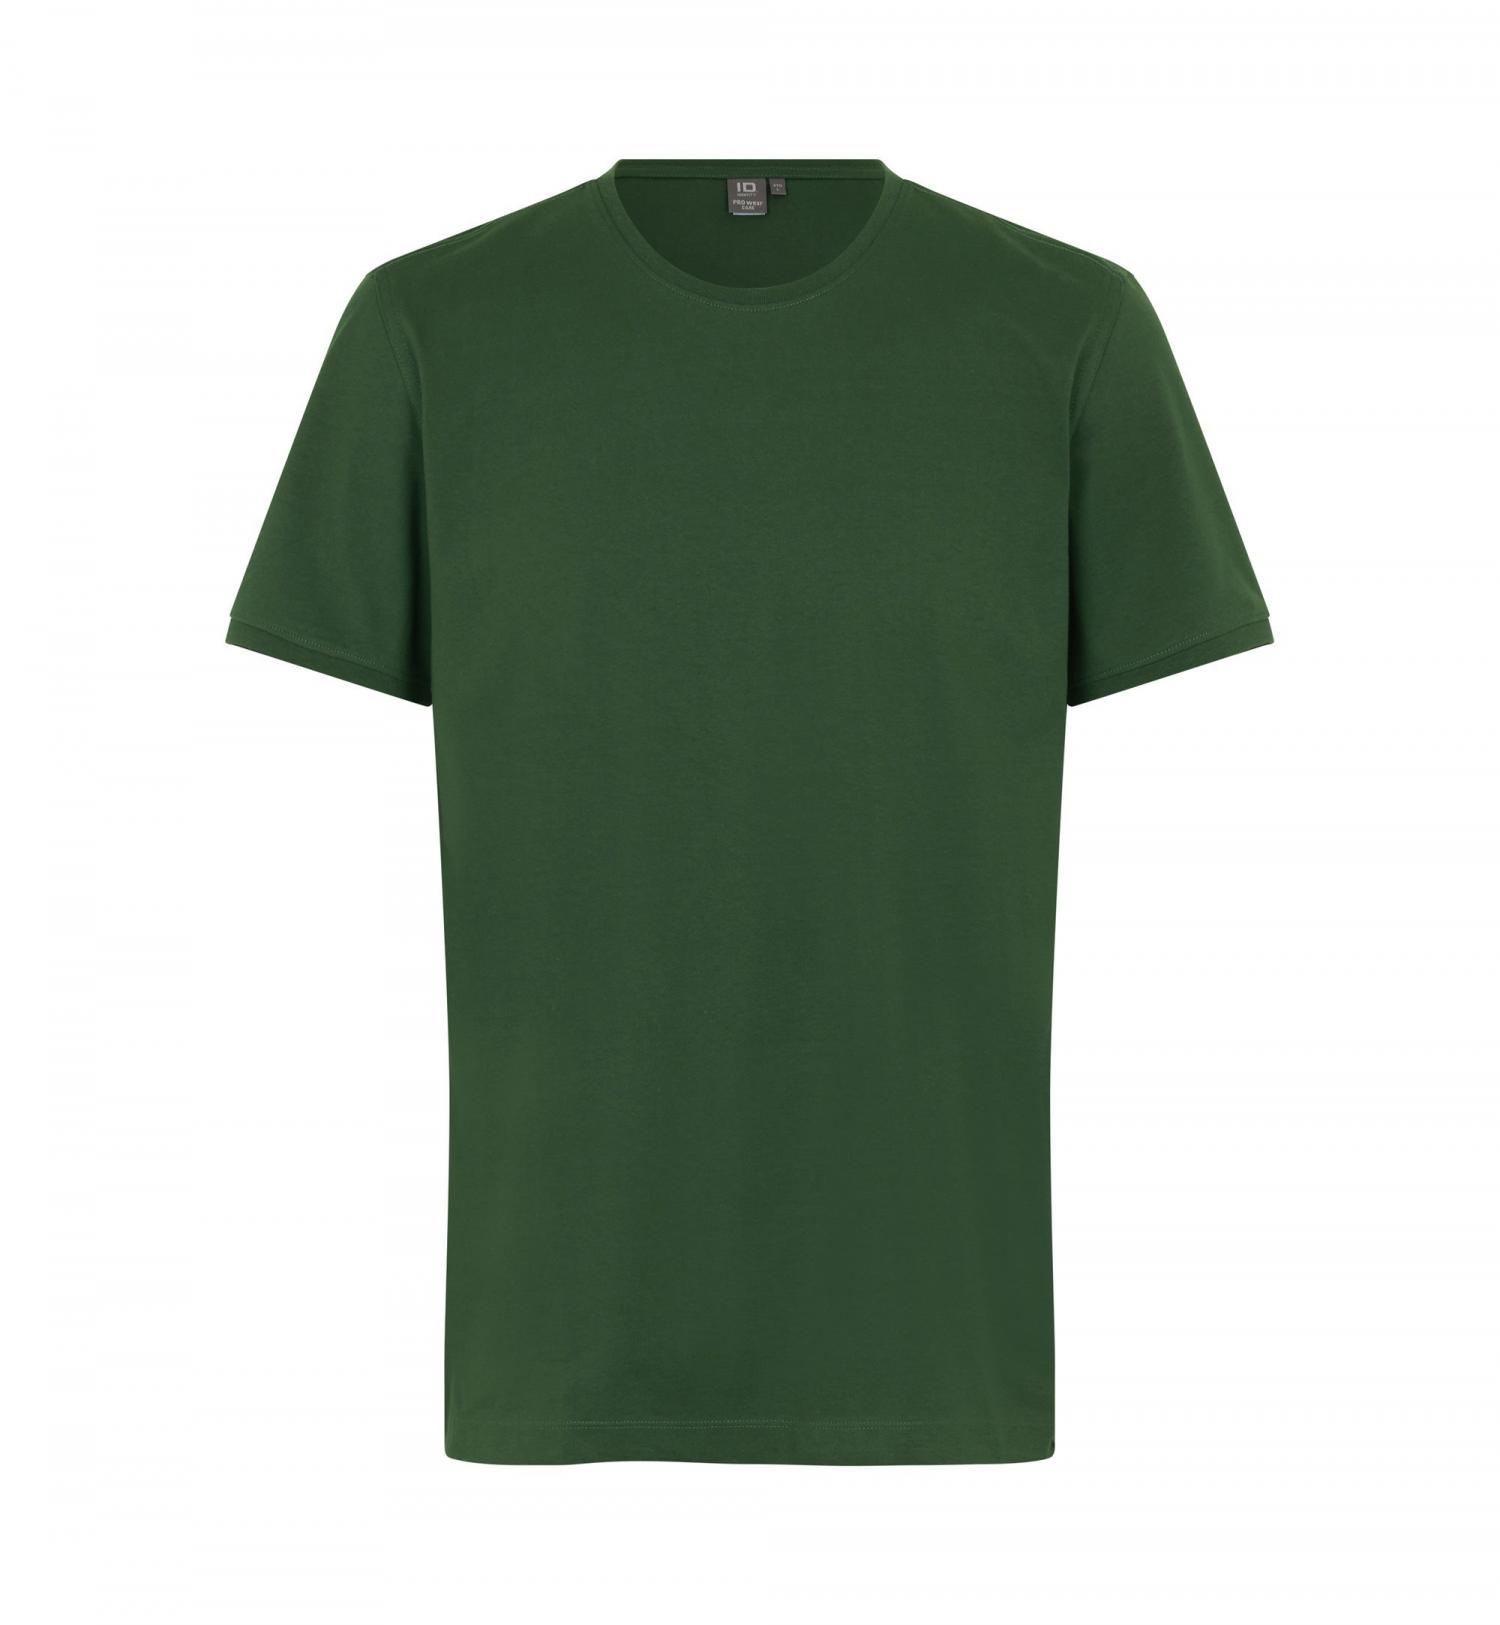 T-shirt PRO Wear CARE 0370-Bottle green